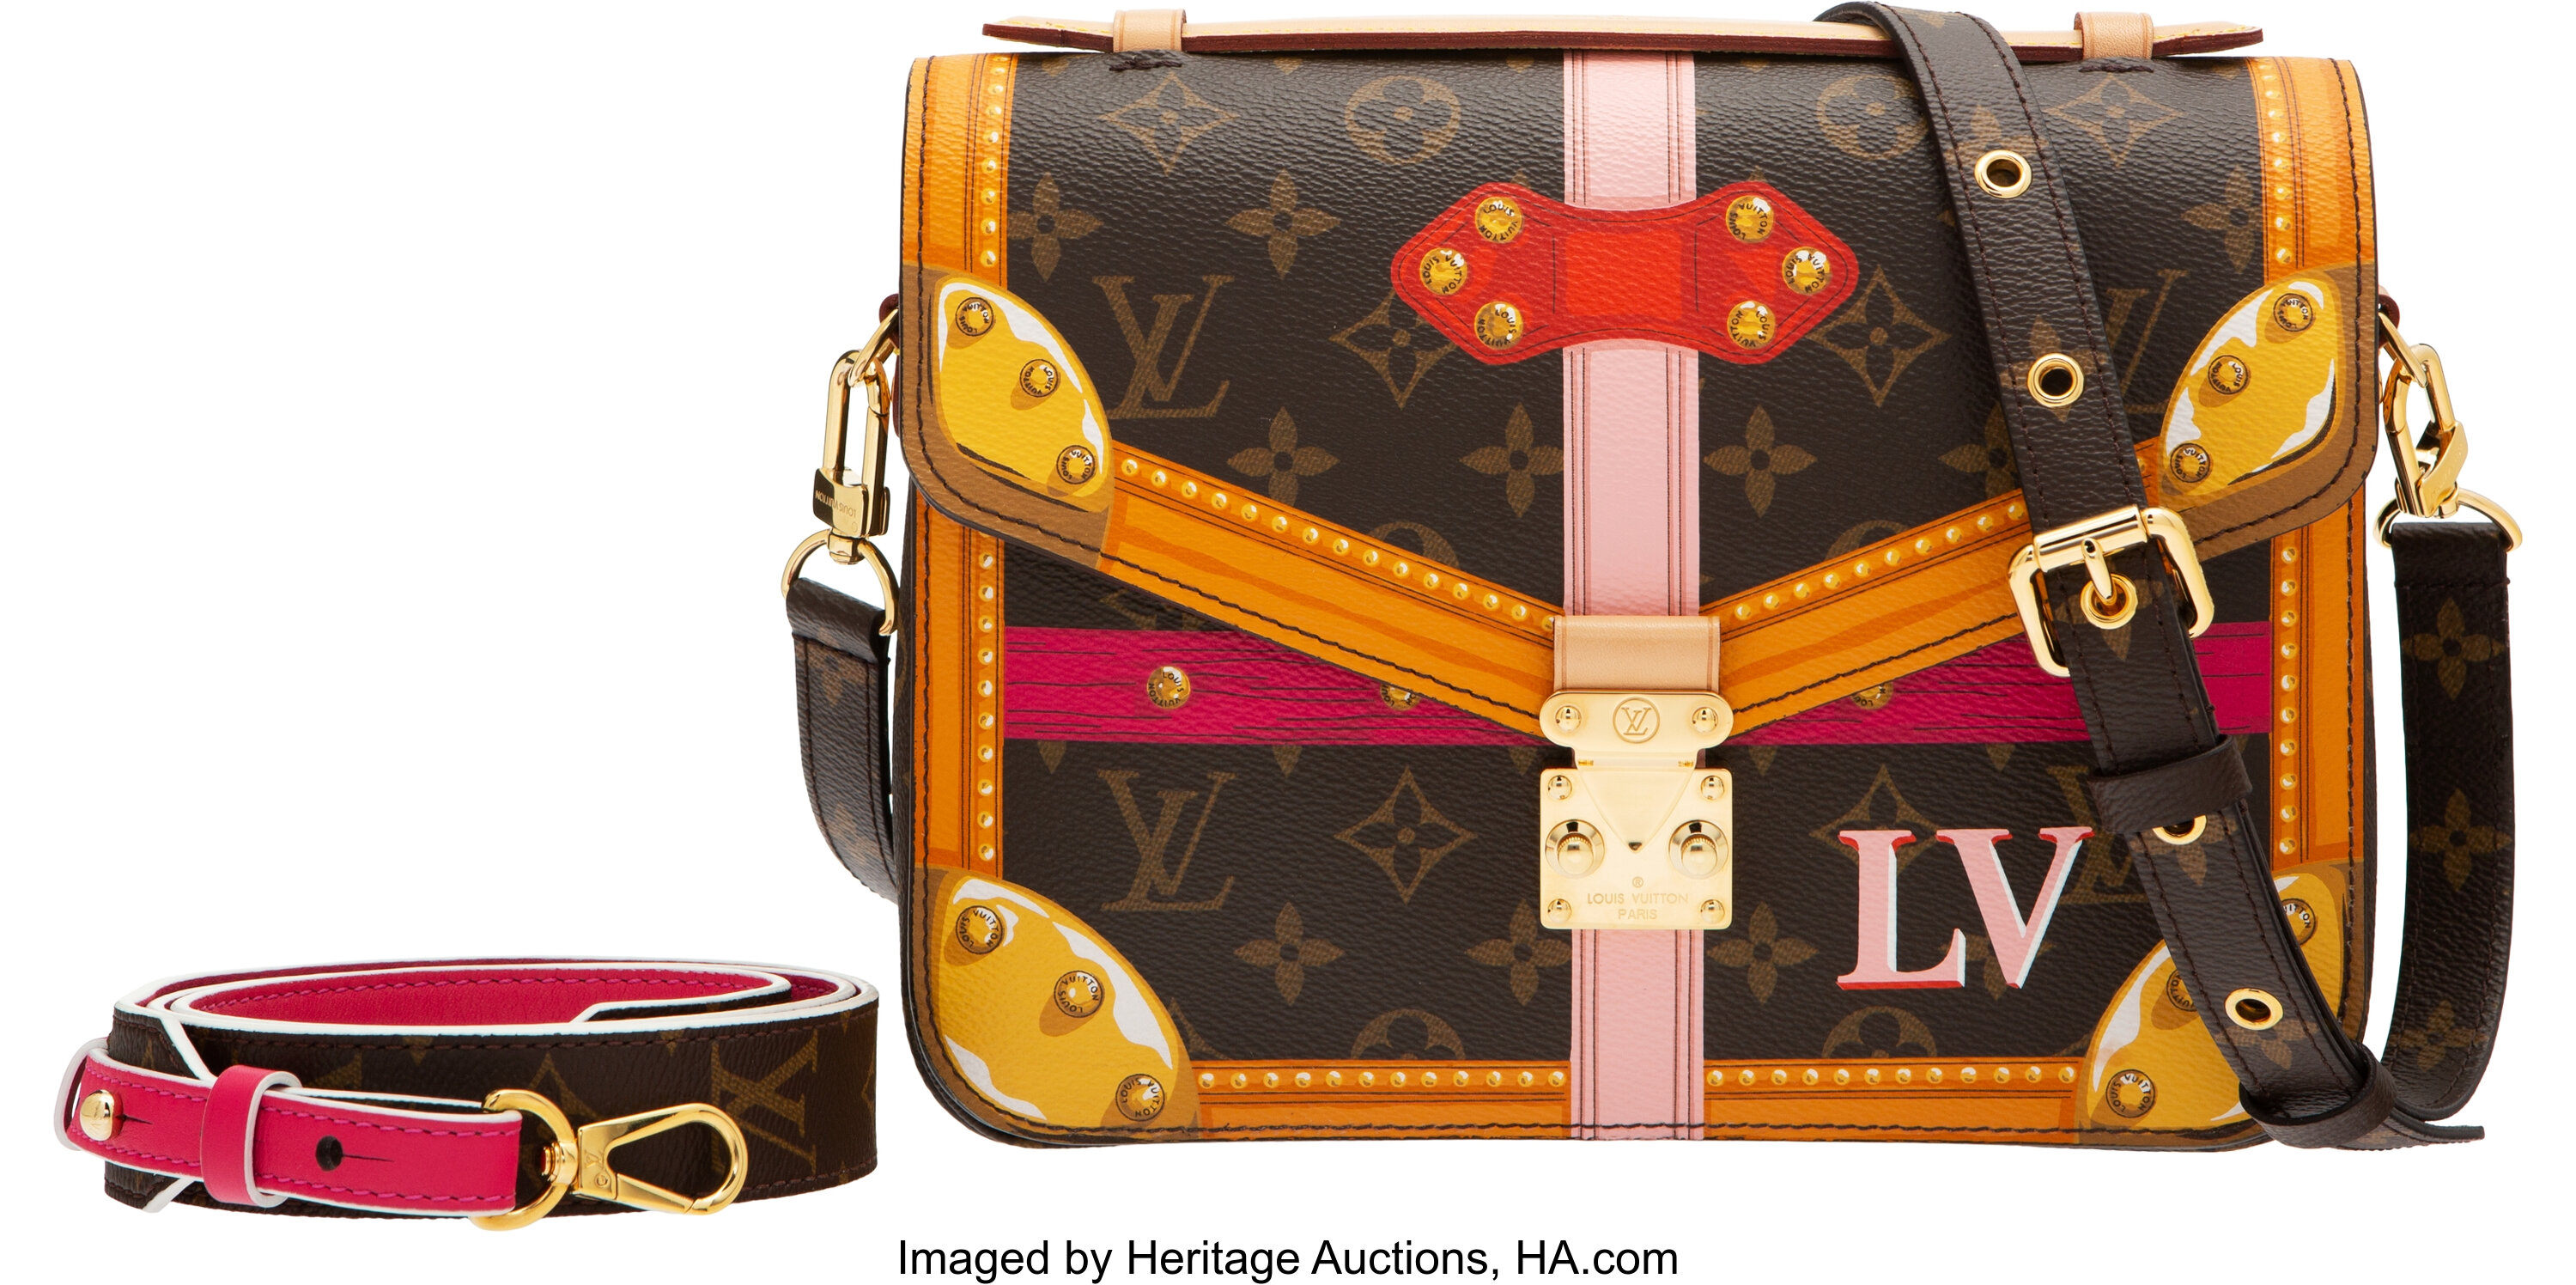 At Auction: Louis Vuitton, LOUIS VUITTON POCHETTE METIS LTD ED MONOGRAM  PURSE